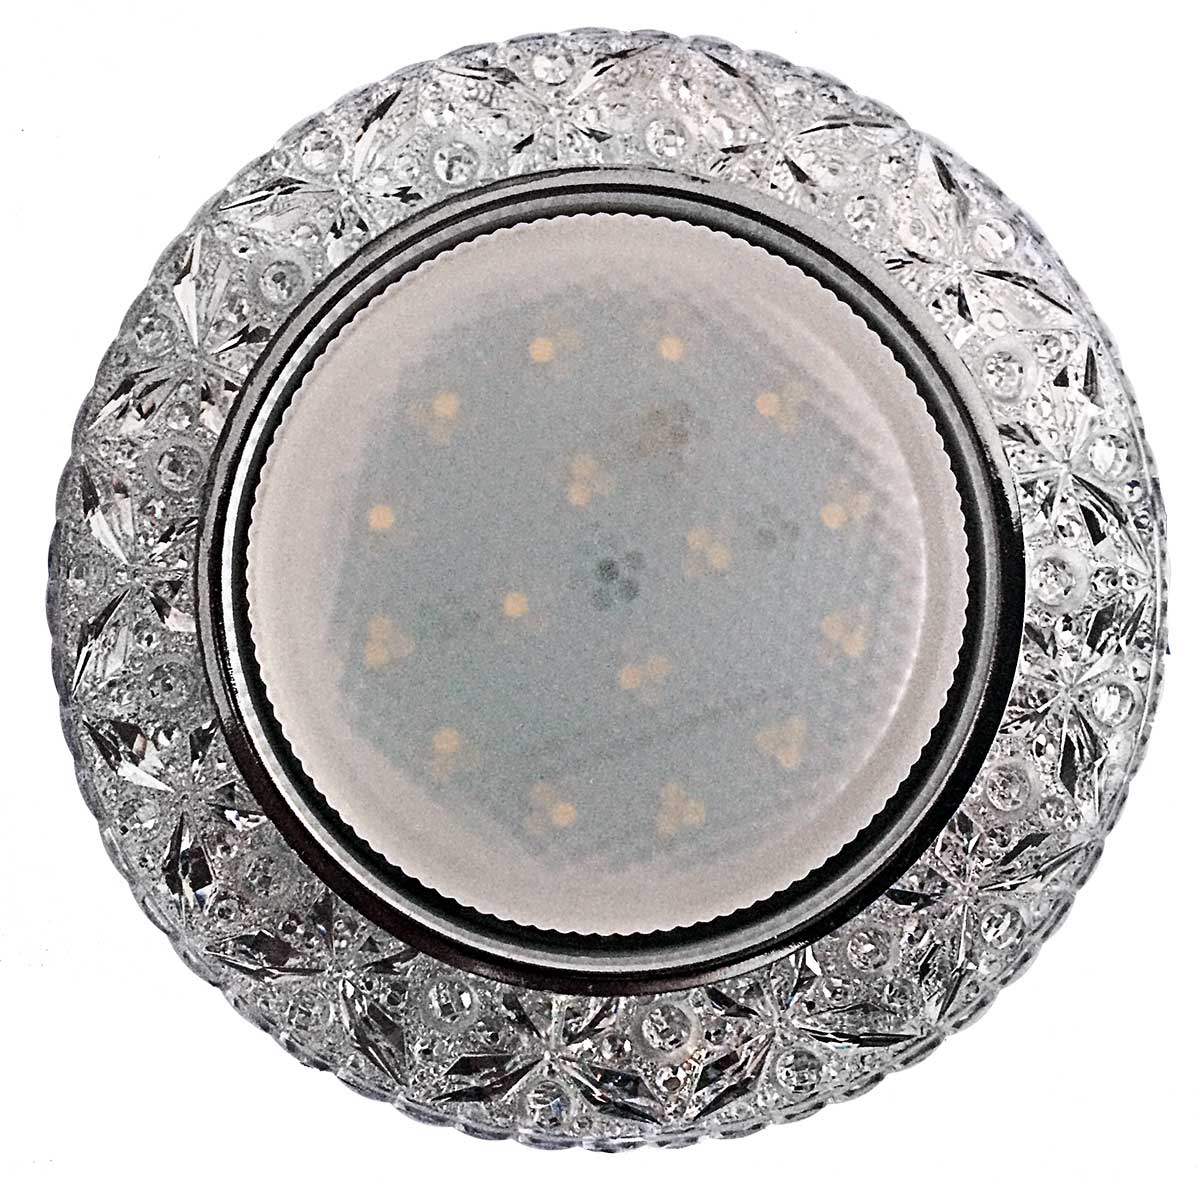 Светильник потолочный встраиваемый Спутник GX53 DECOR В, цвет: прозрачный/хром